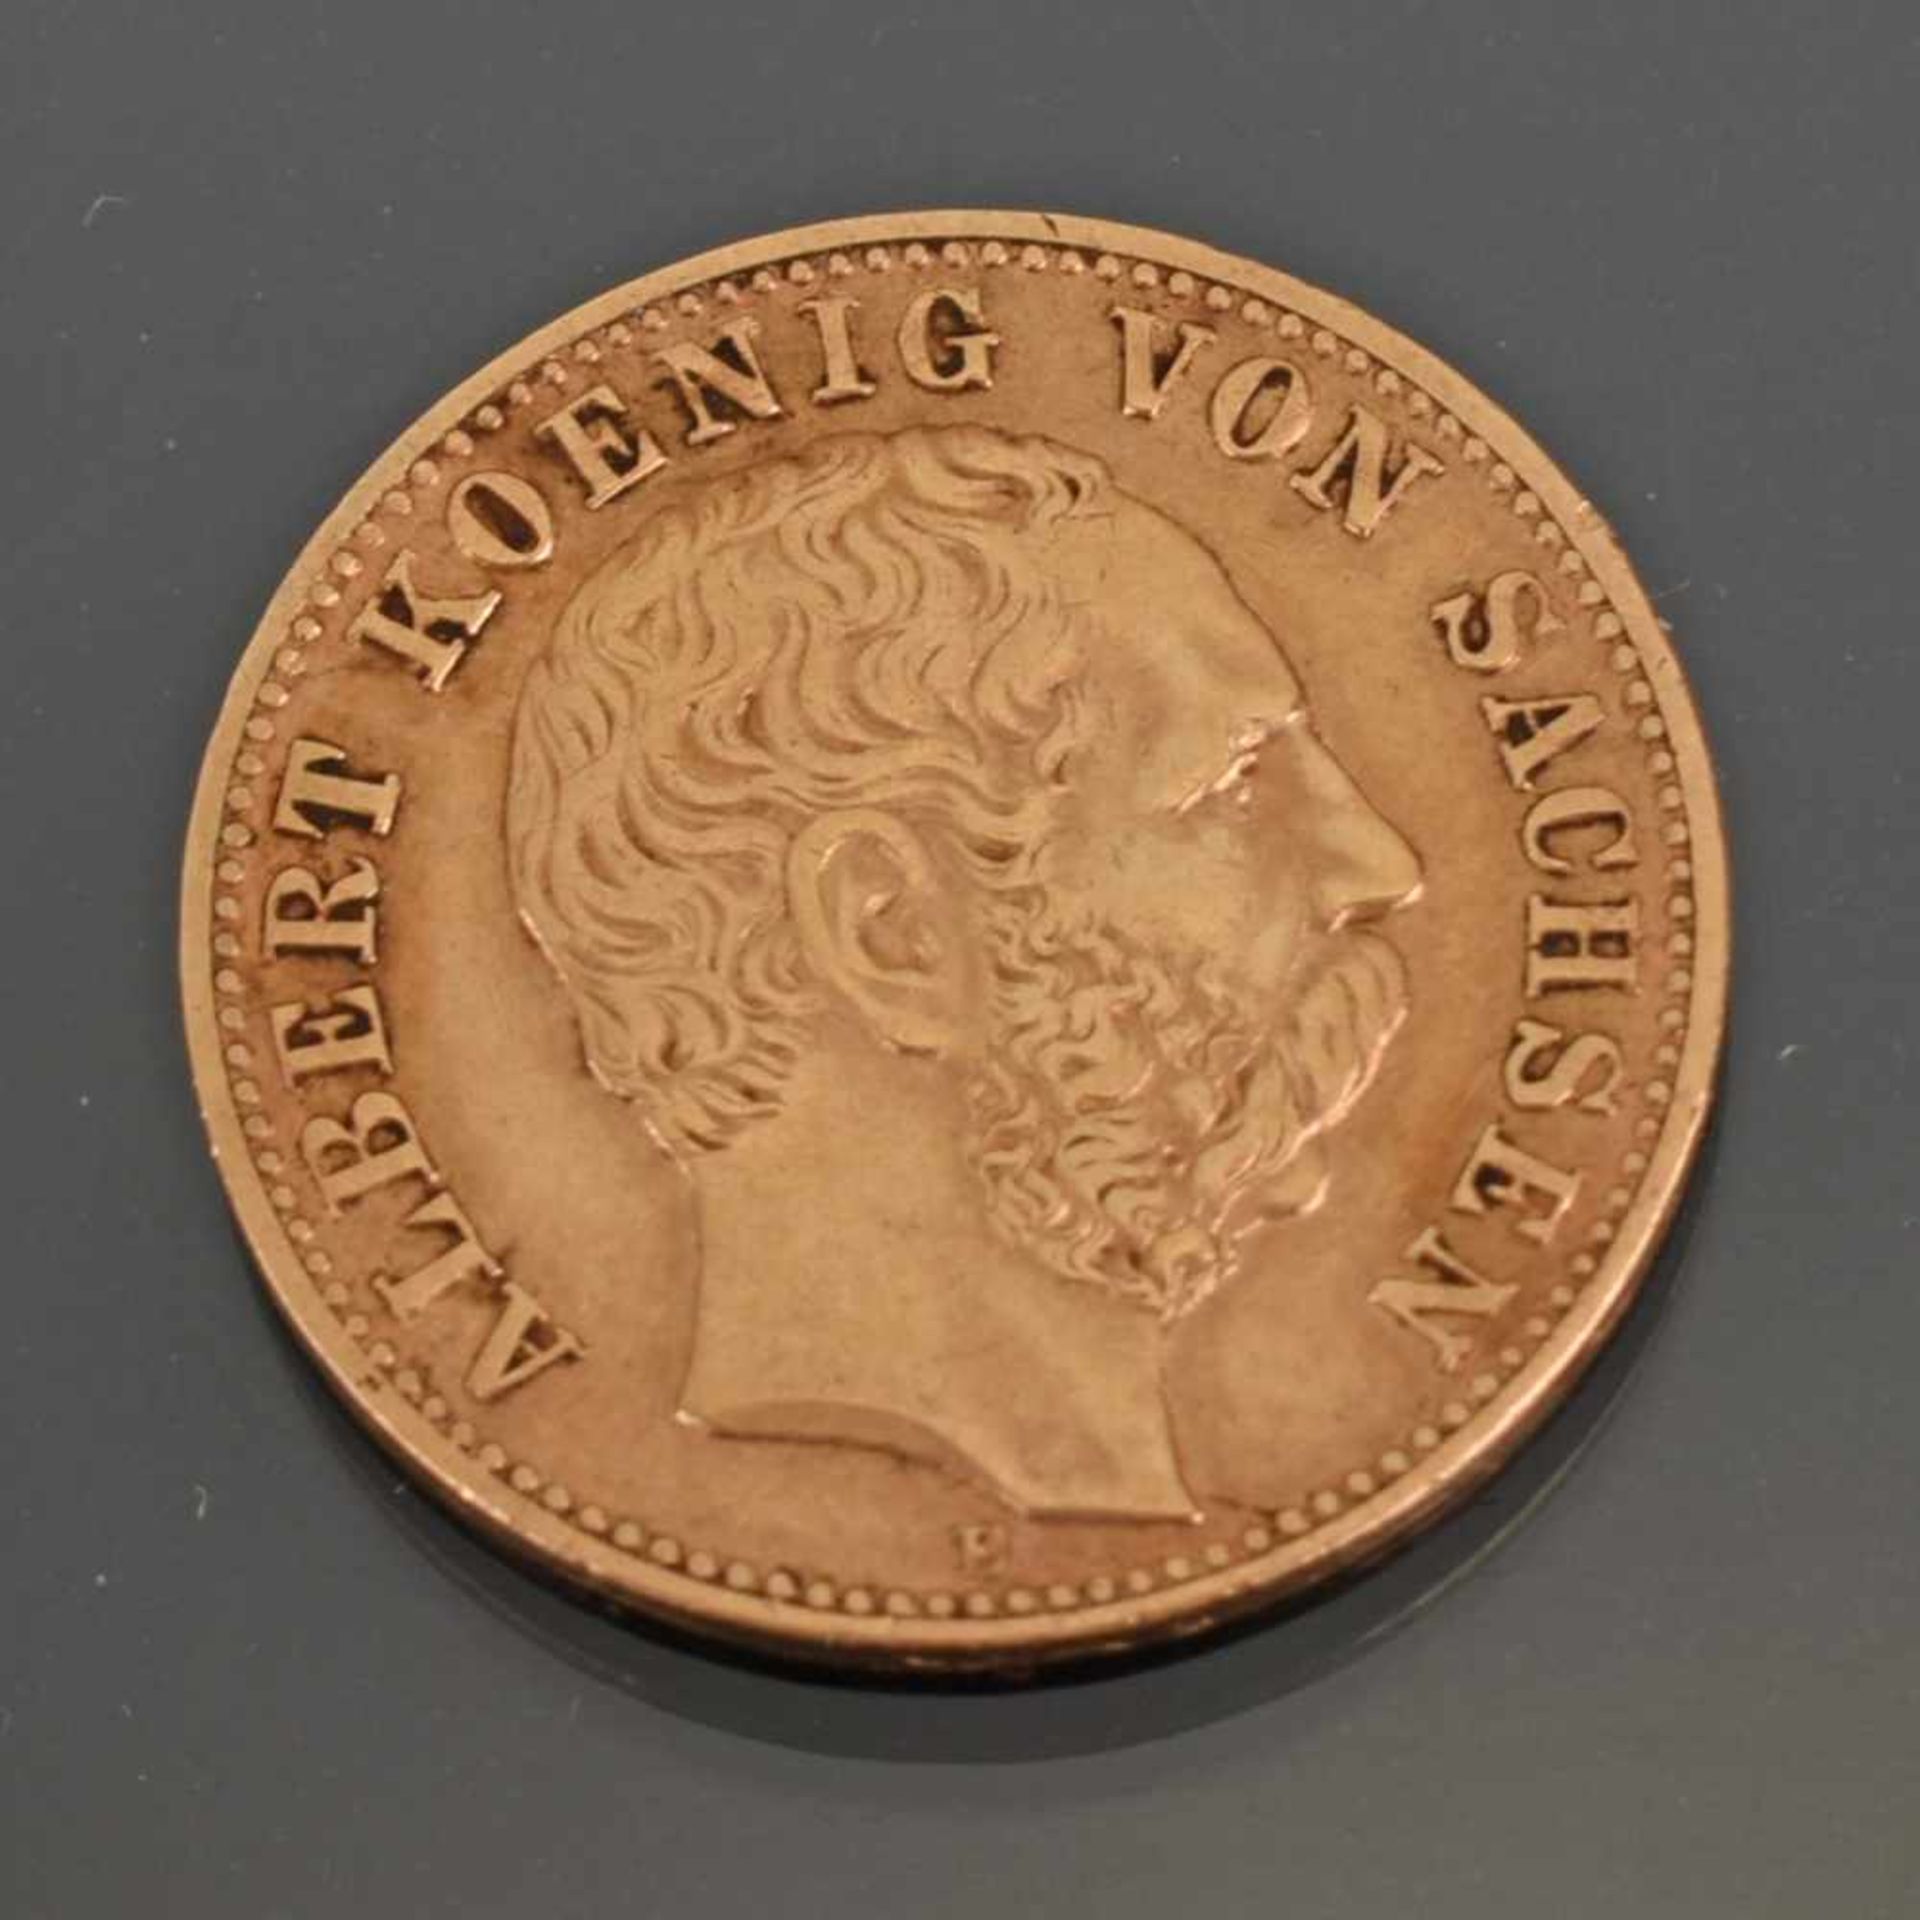 Goldmünze Kaiserreich - Sachsen 1891 10 Mark in Gold, 900/1000, 3,98 g, D ca. 19,5 mm, av. Albert - Bild 2 aus 3